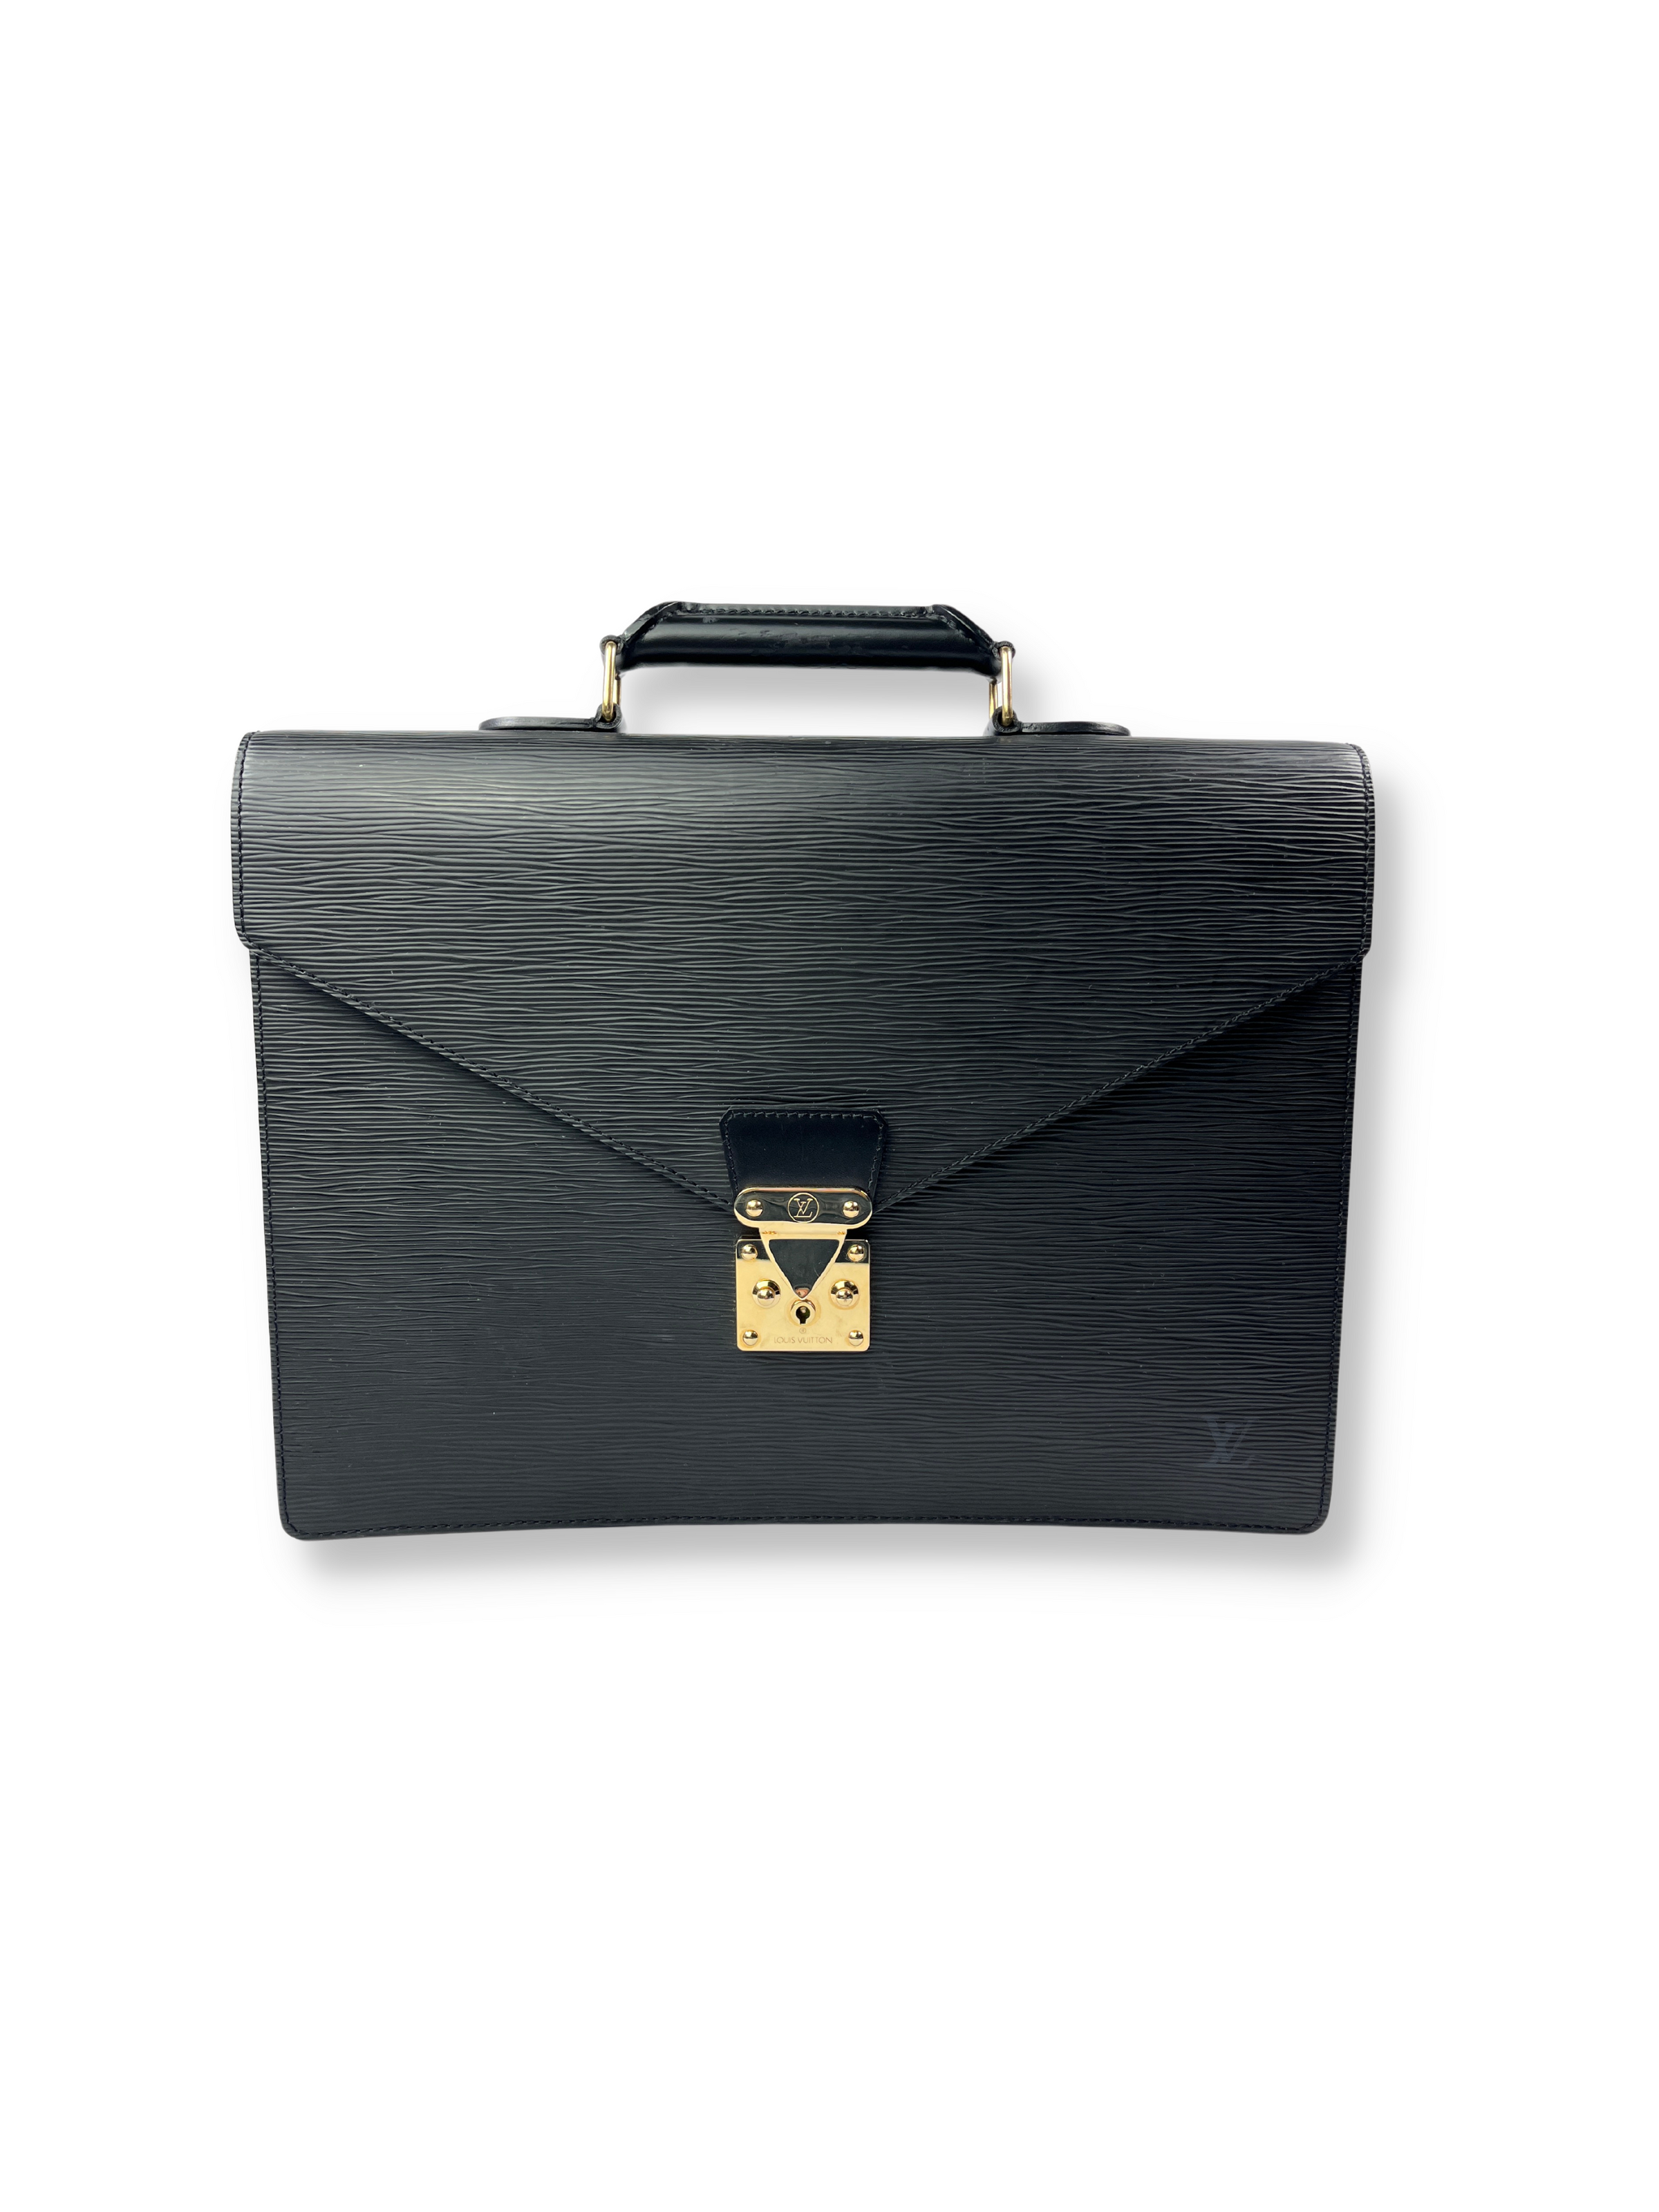 Goyard Ambassador Briefcase Black